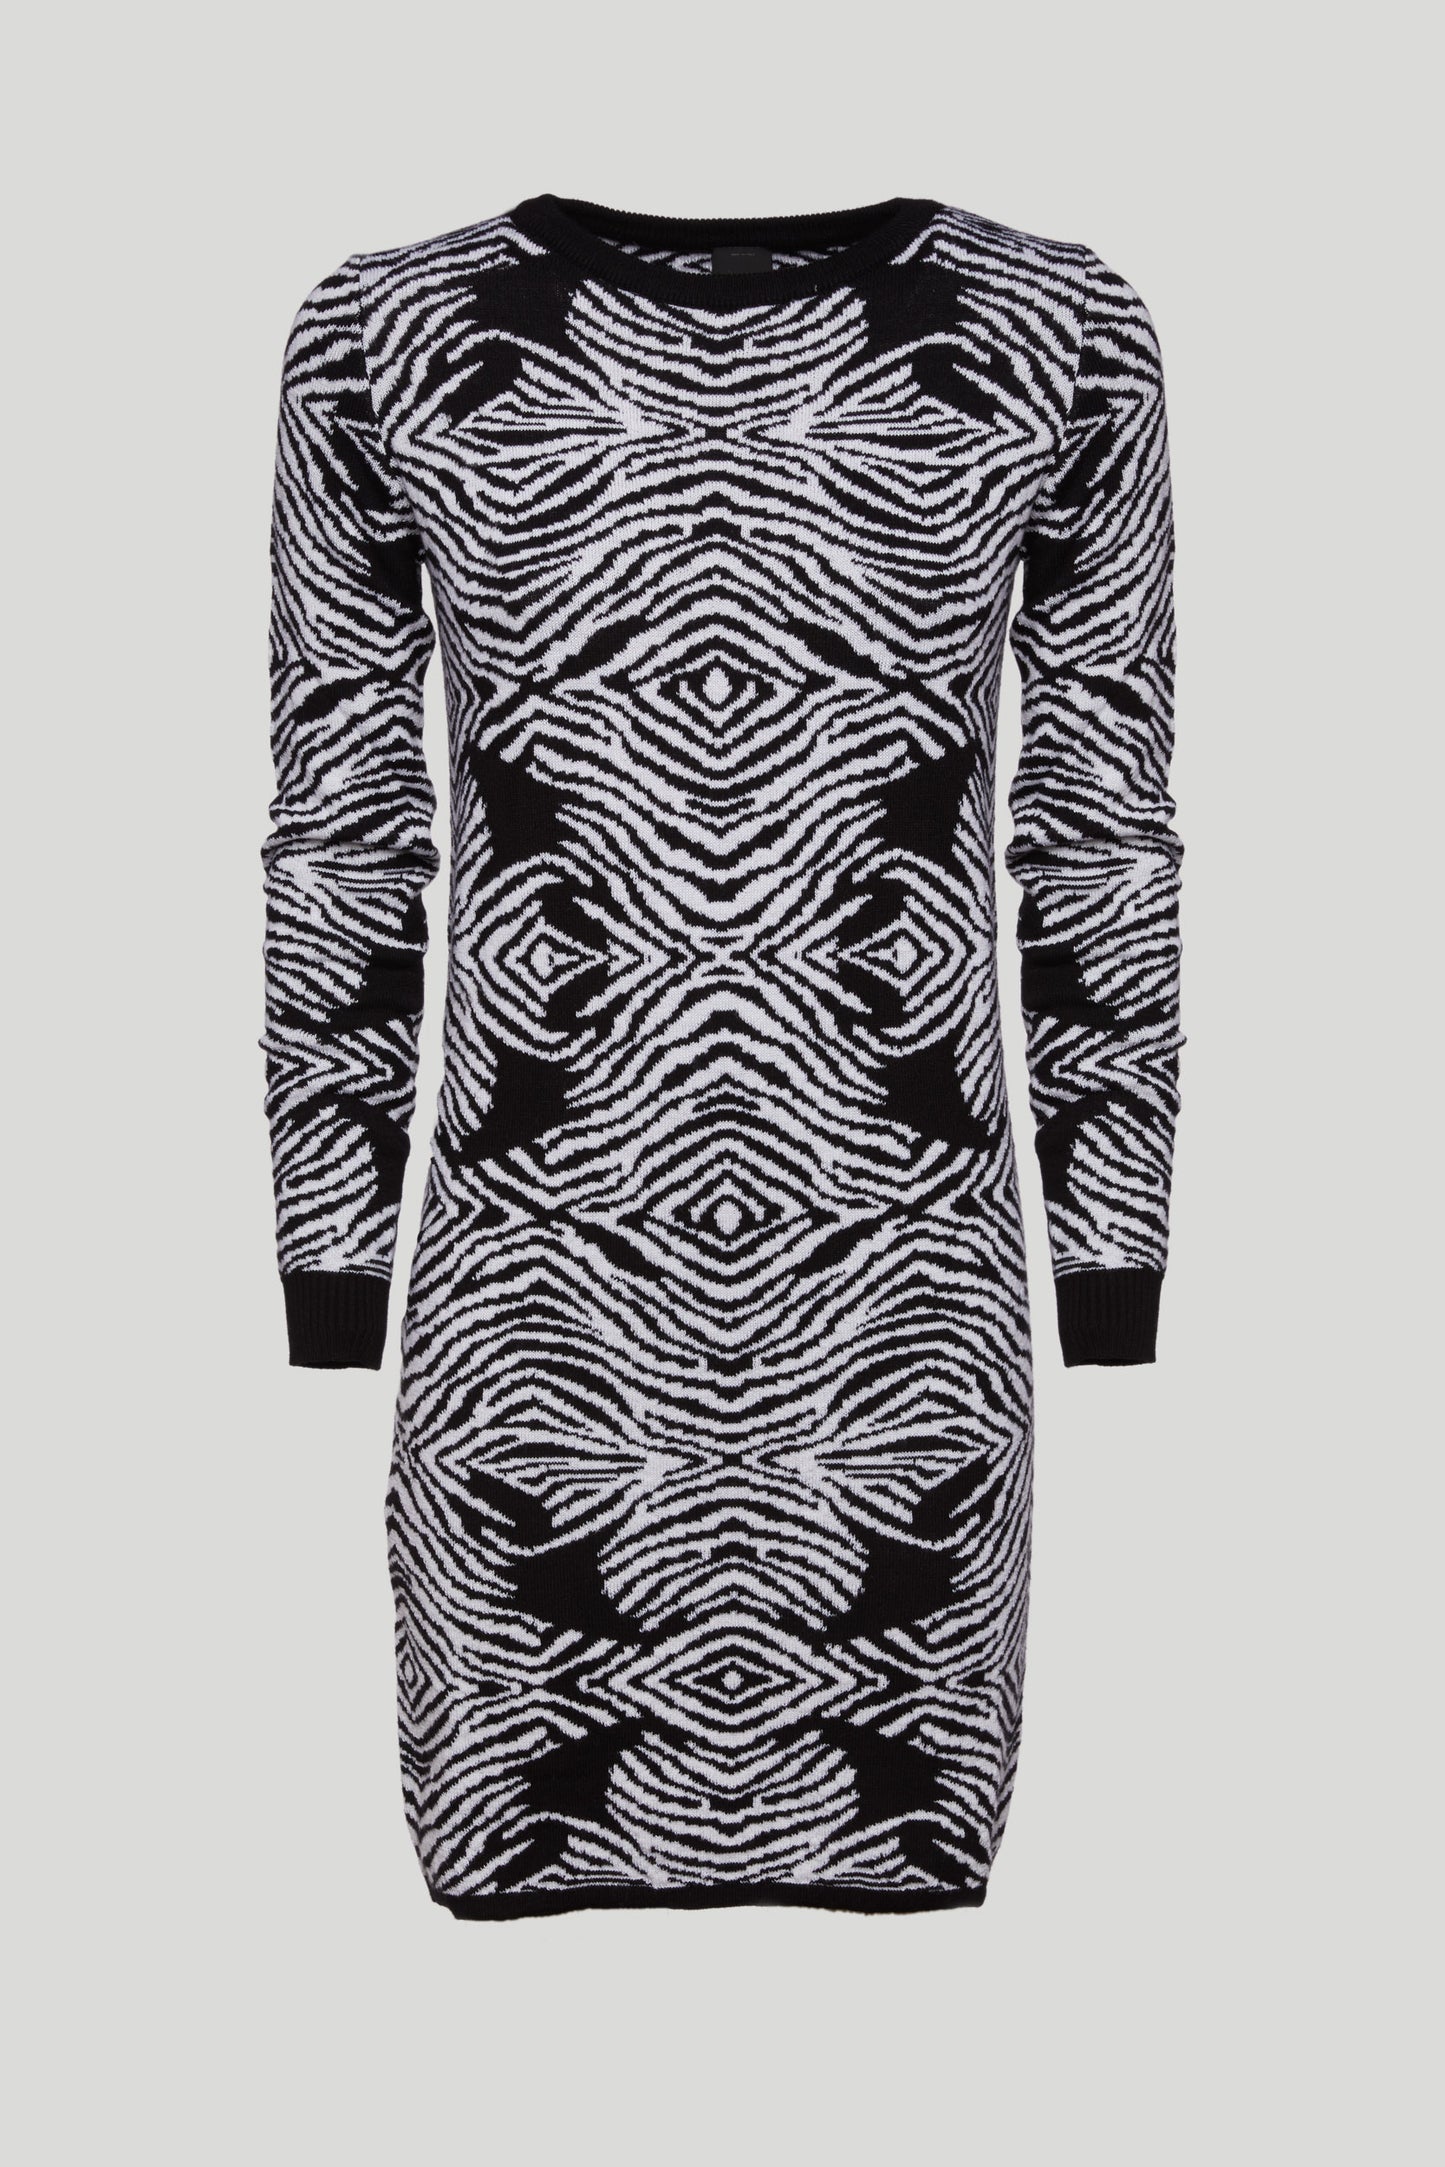 PINKO Zebra Knit Dress